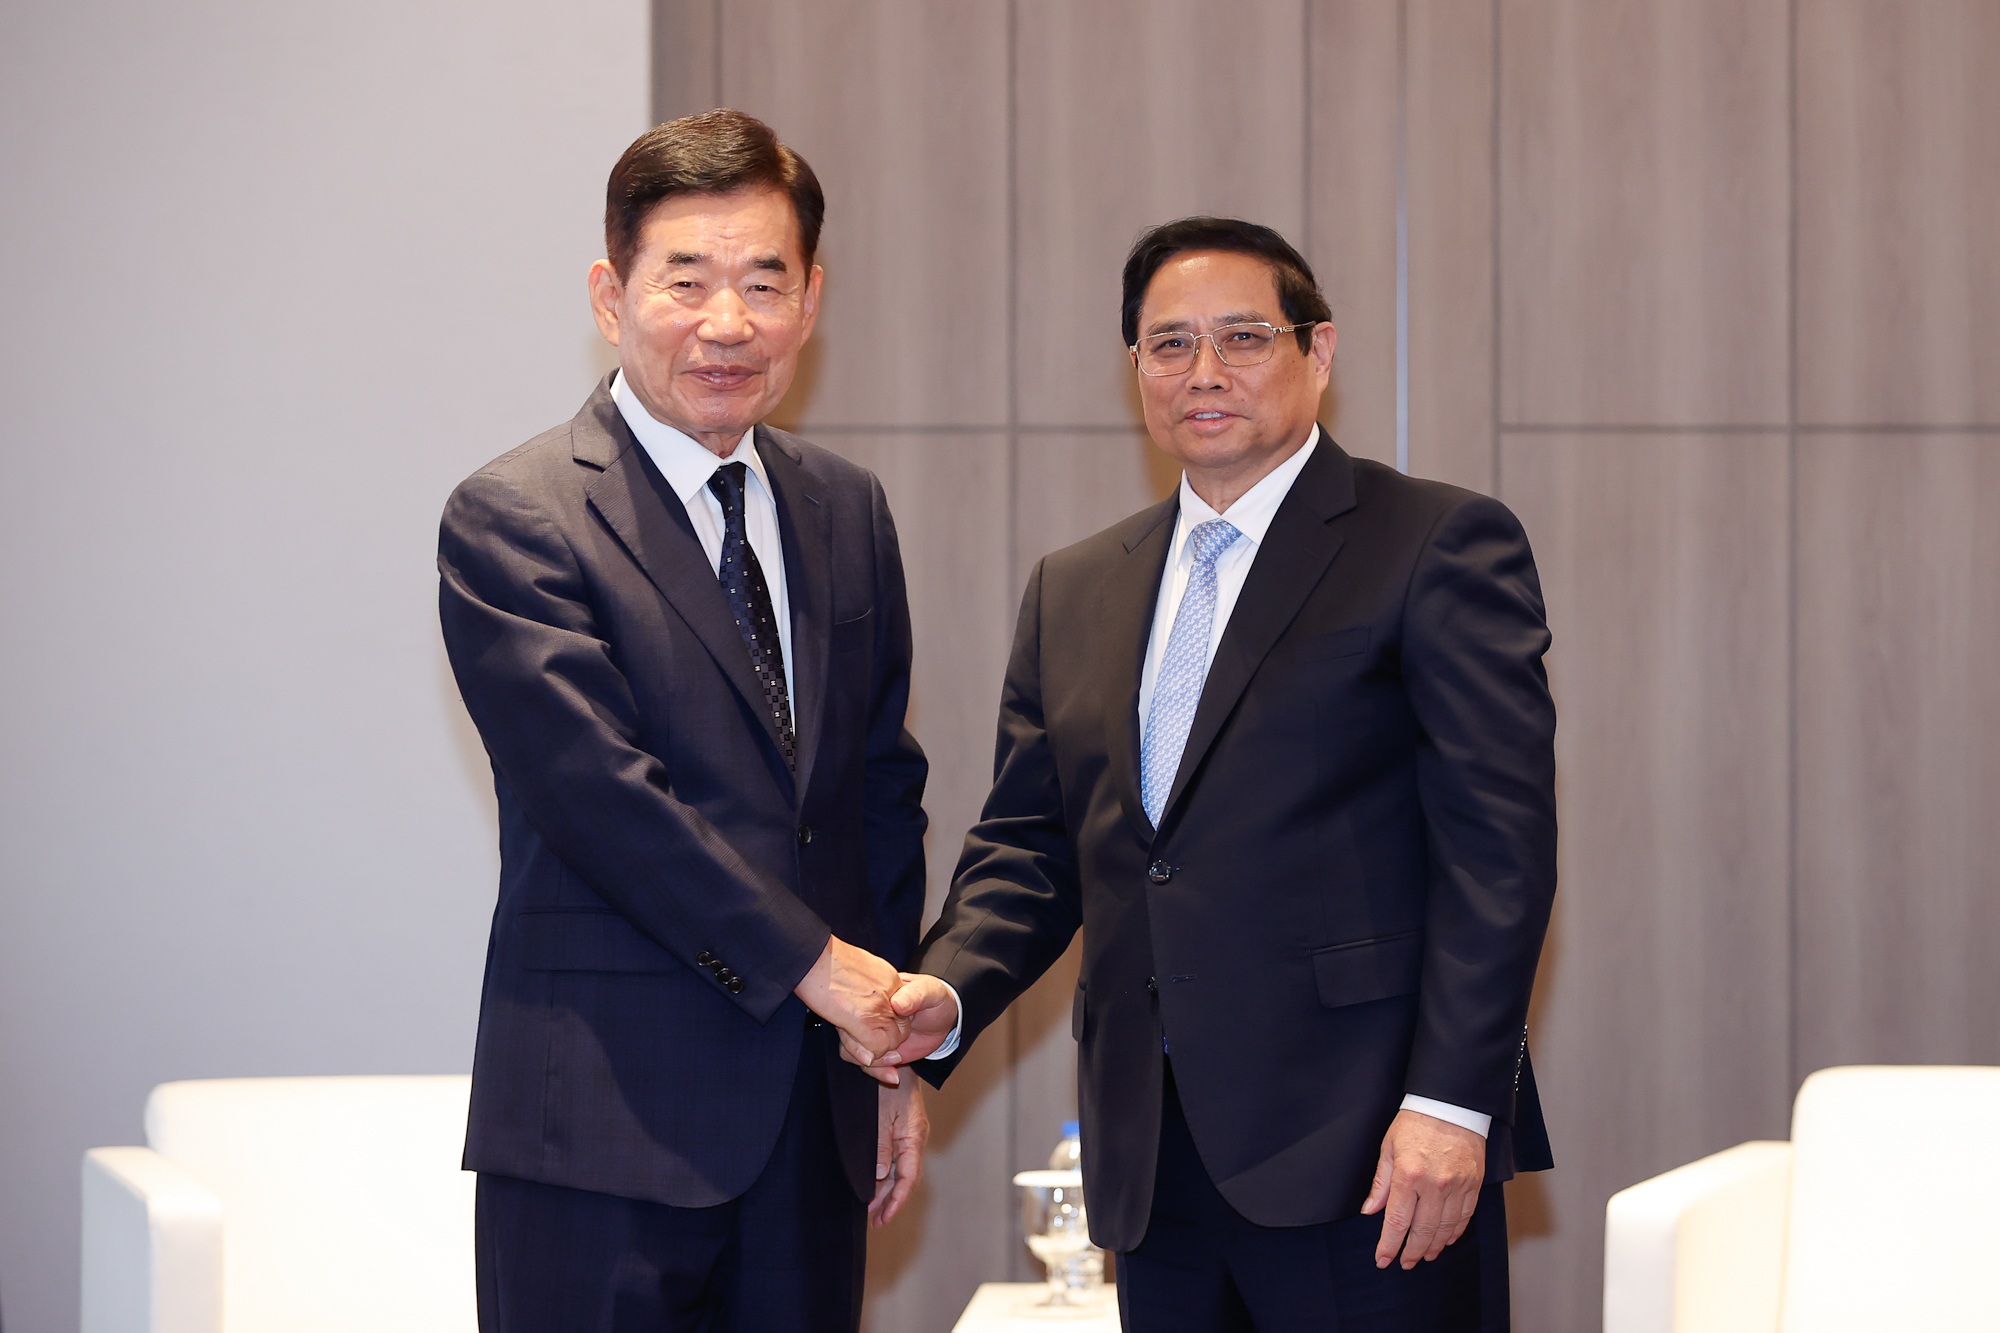 Nguyên Chủ tịch Quốc hội Hàn Quốc: Việt Nam sẽ tăng trưởng cao nhất khu vực - 1